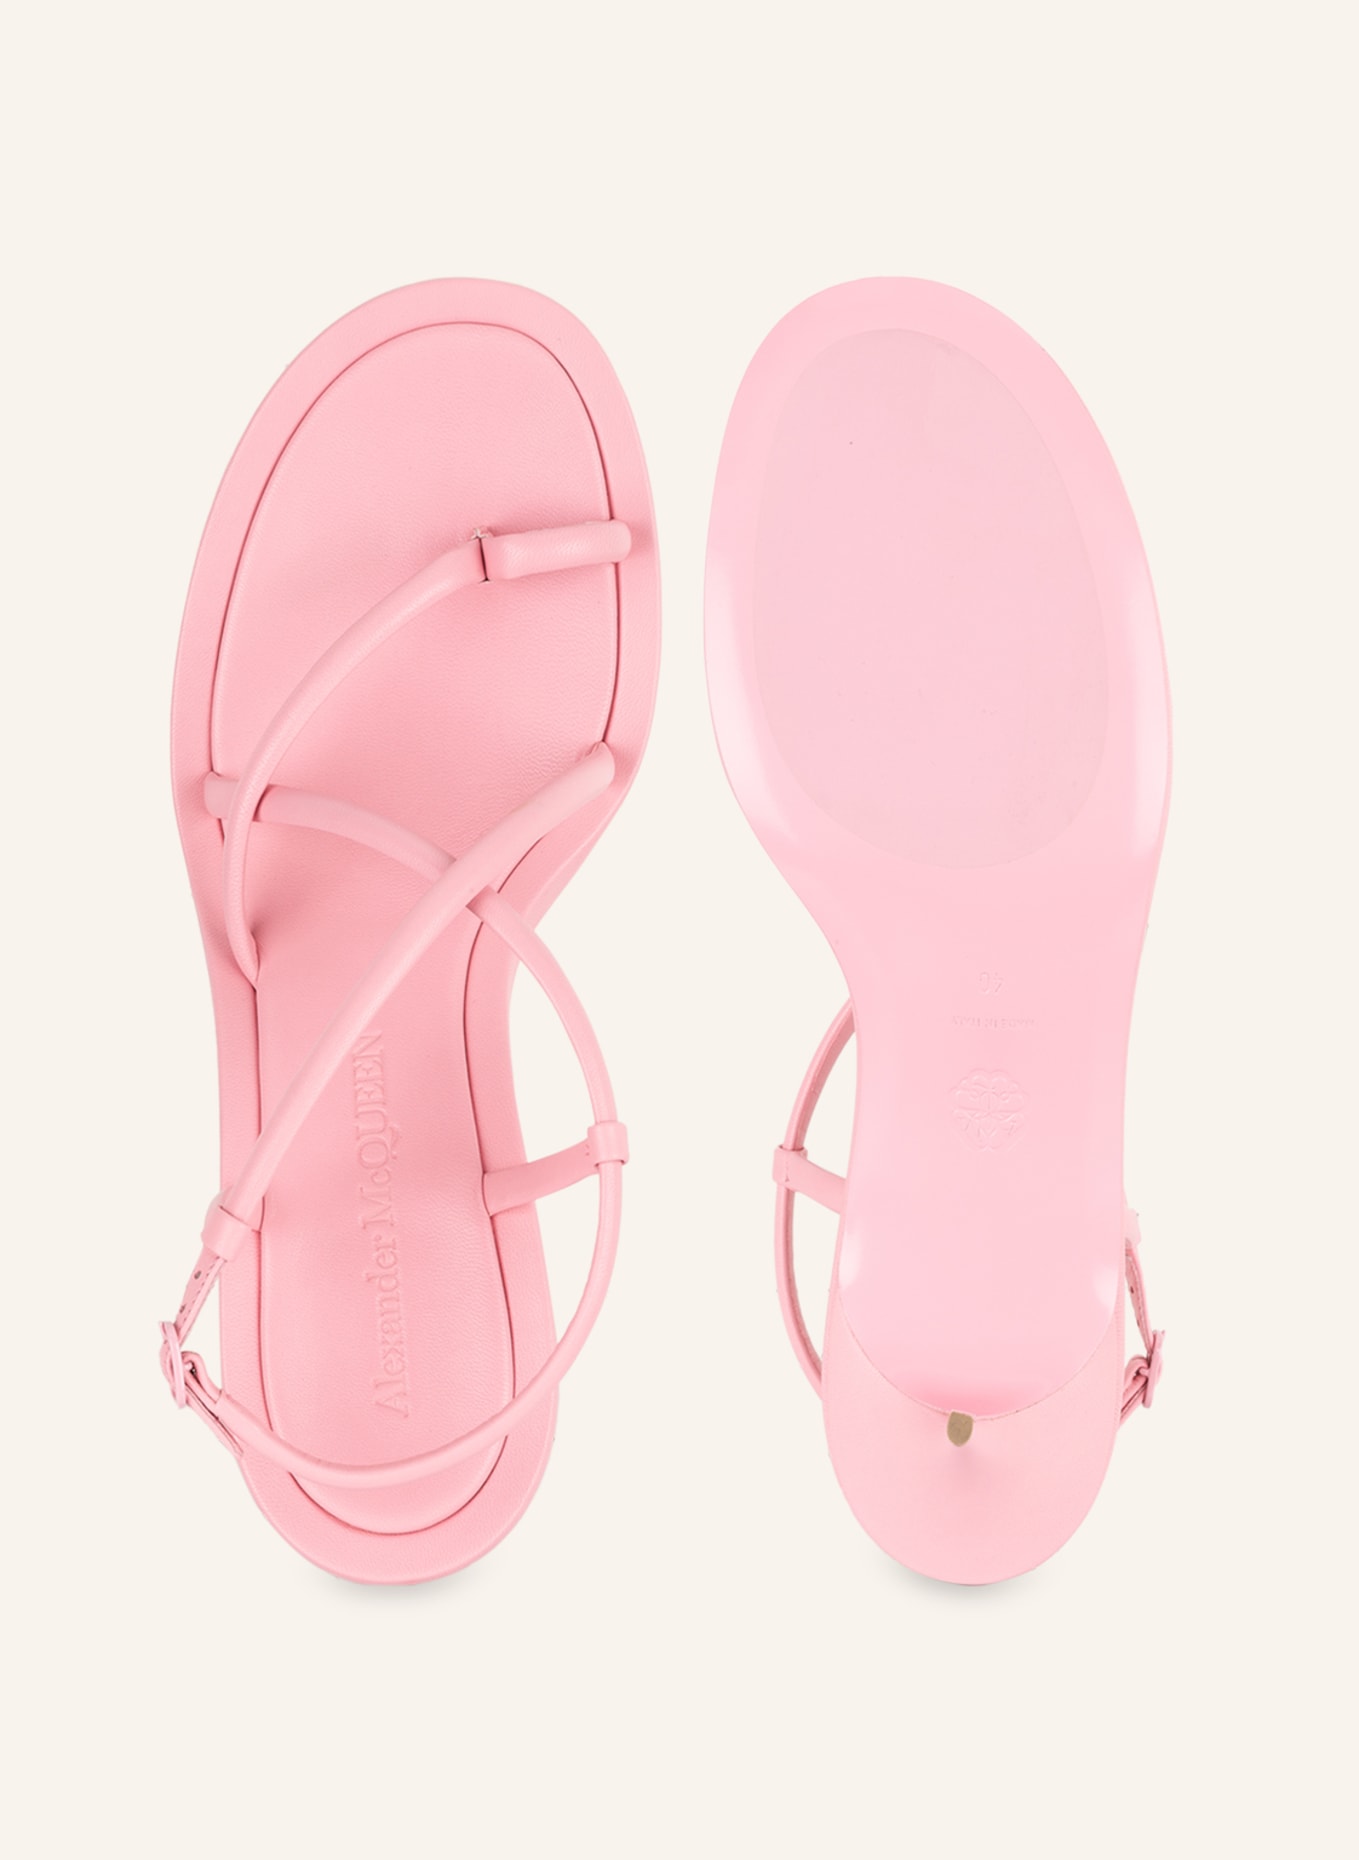 Alexander McQUEEN Sandals, Color: PINK (Image 5)